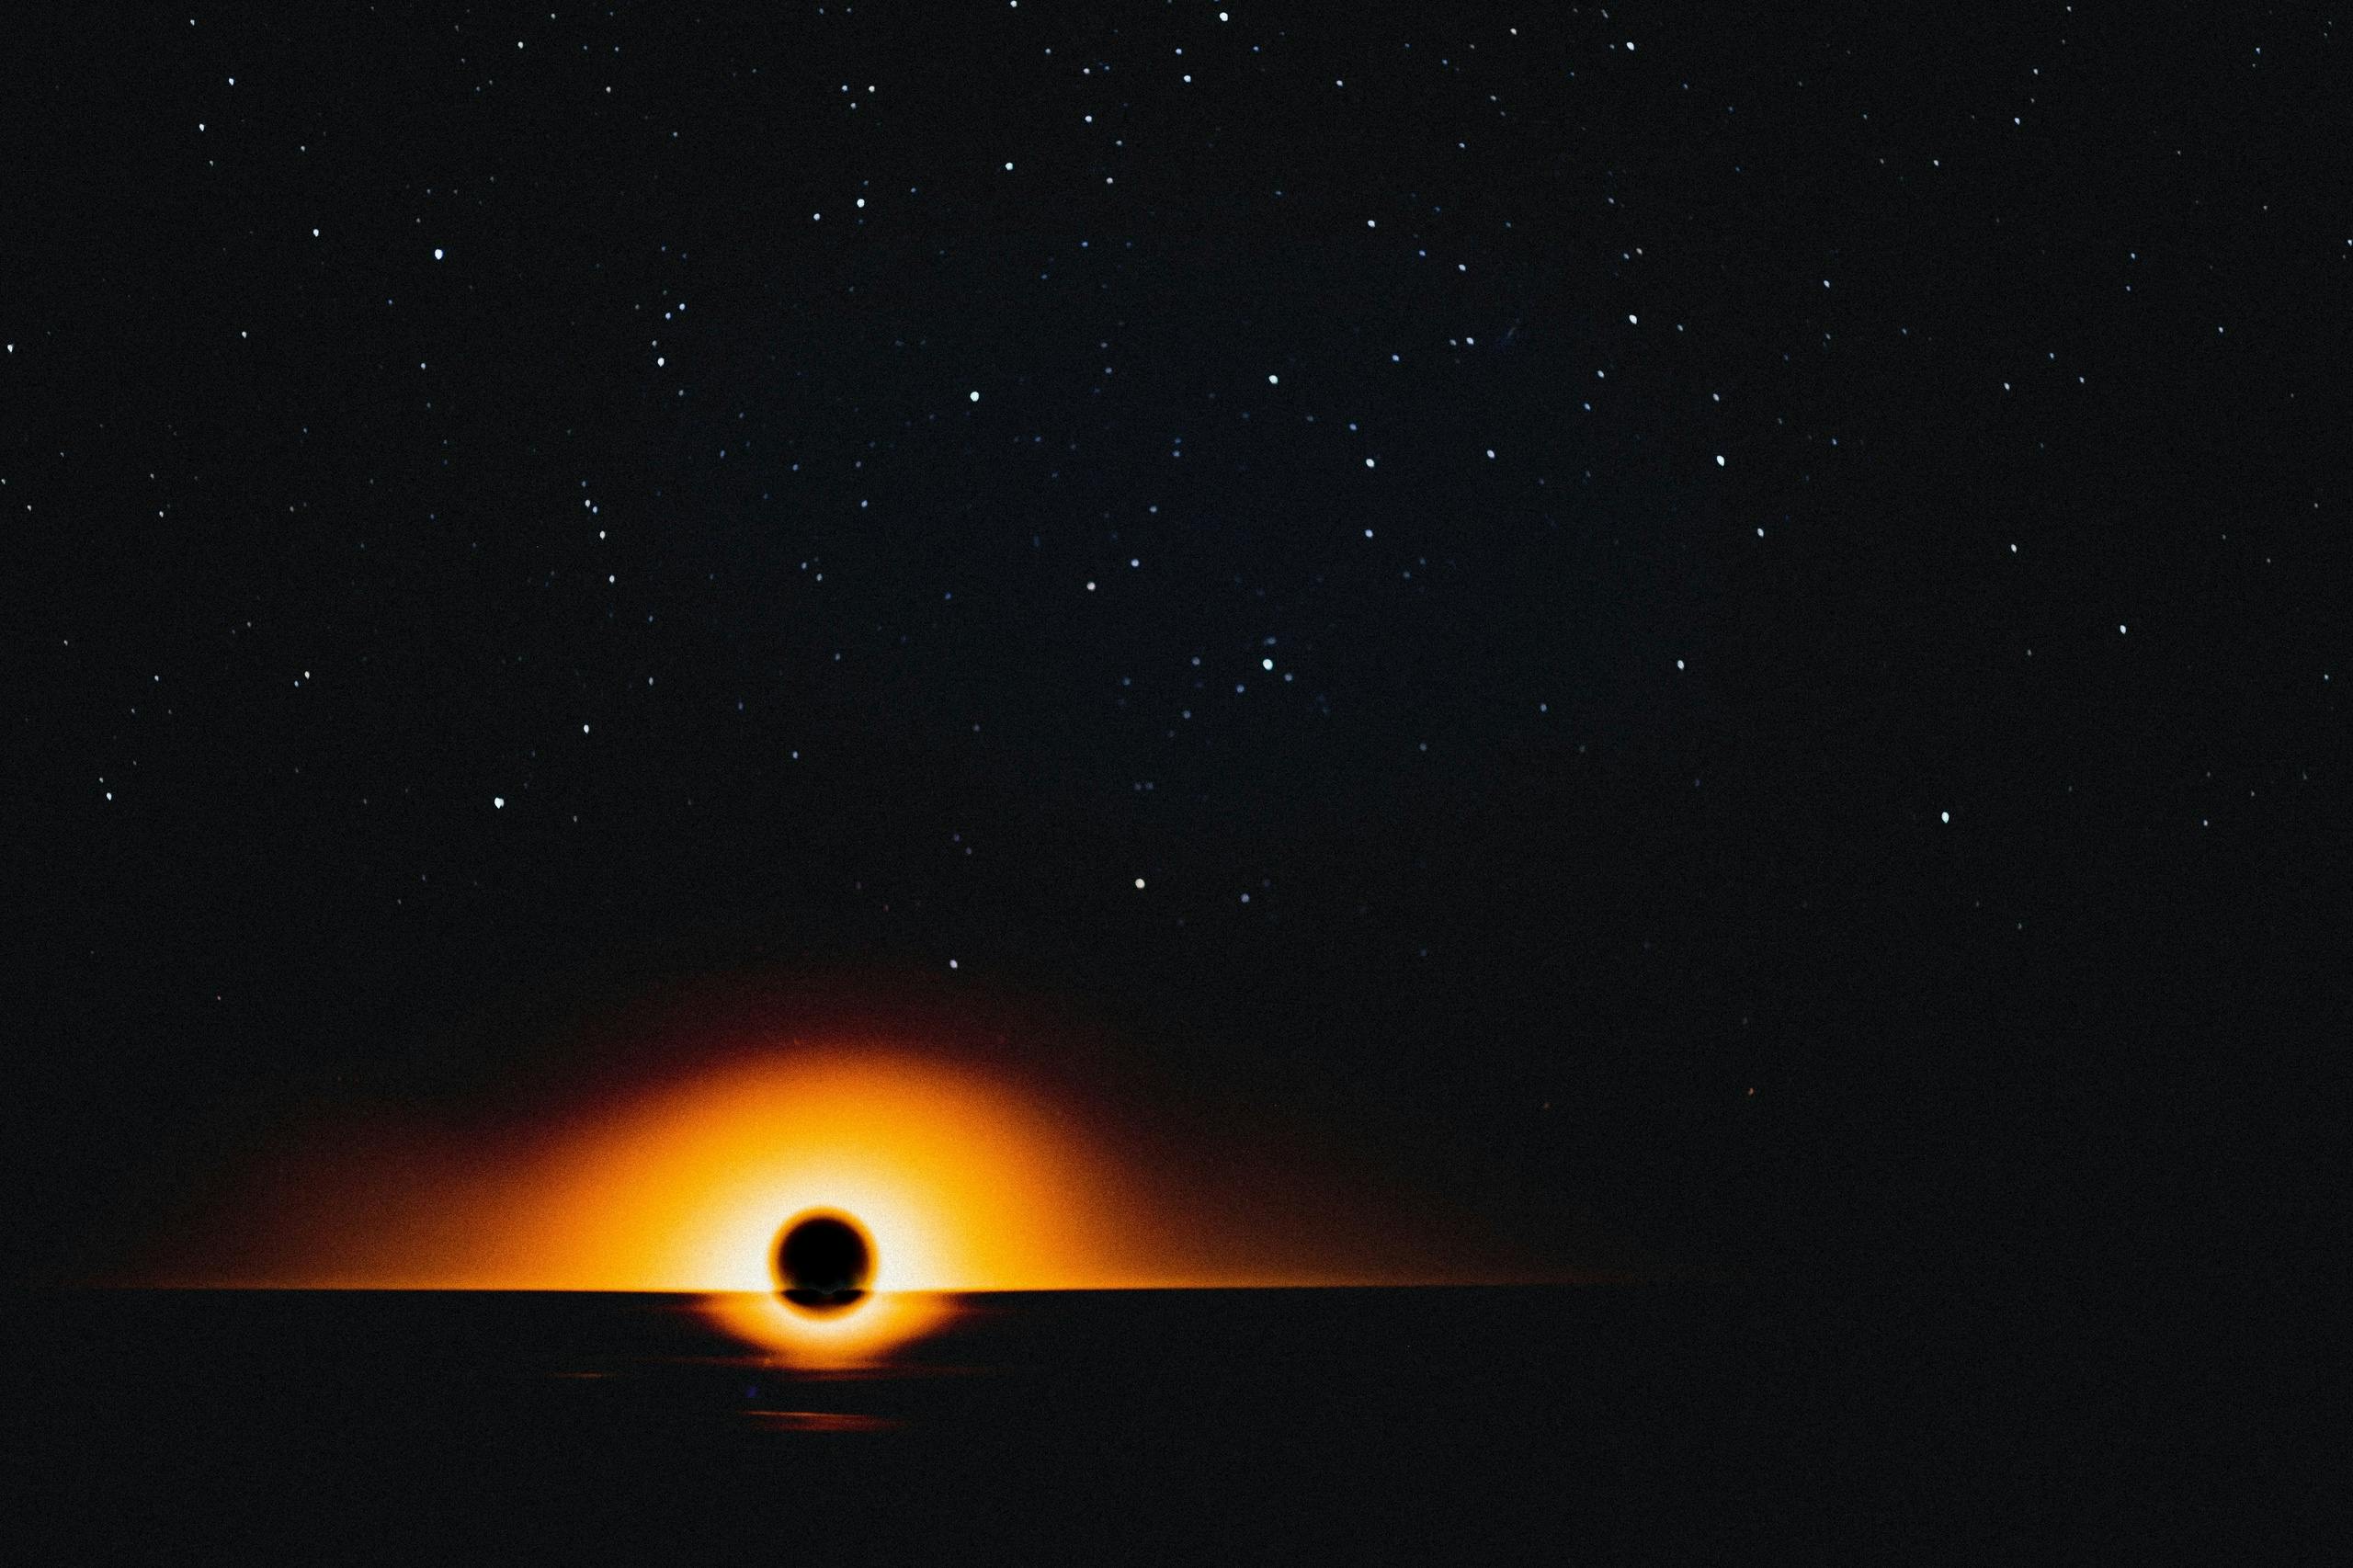 La NASA condivide le foto dei buchi neri supermassicci: “Potrebbero essere costituiti da miliardi di stelle”